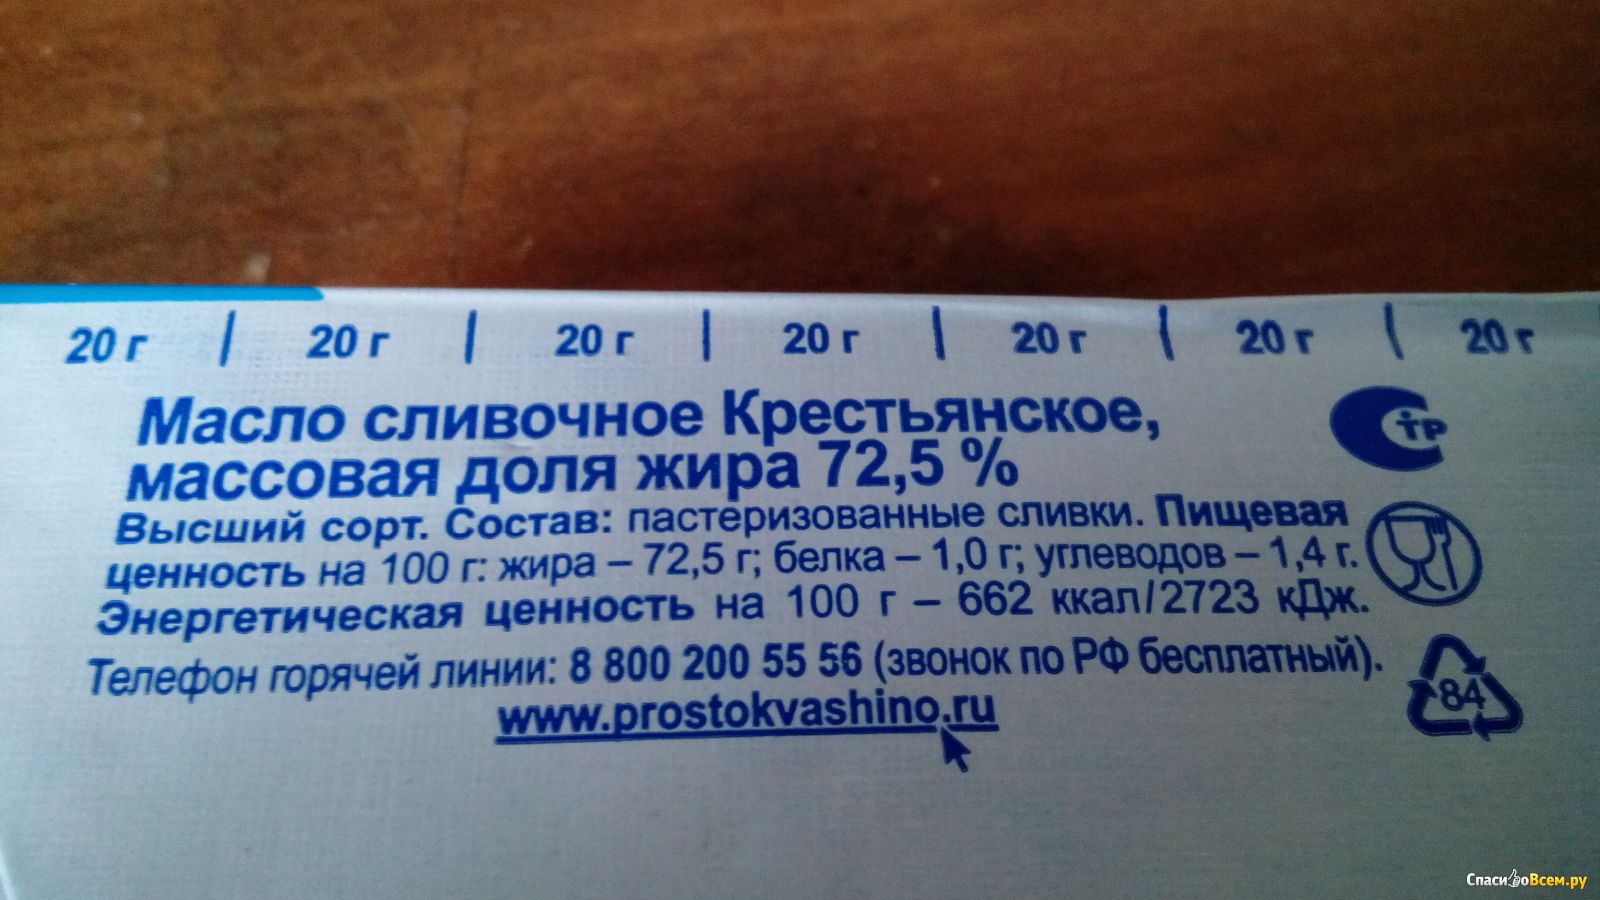 Состав сливочного масла Простоквашино 72.5